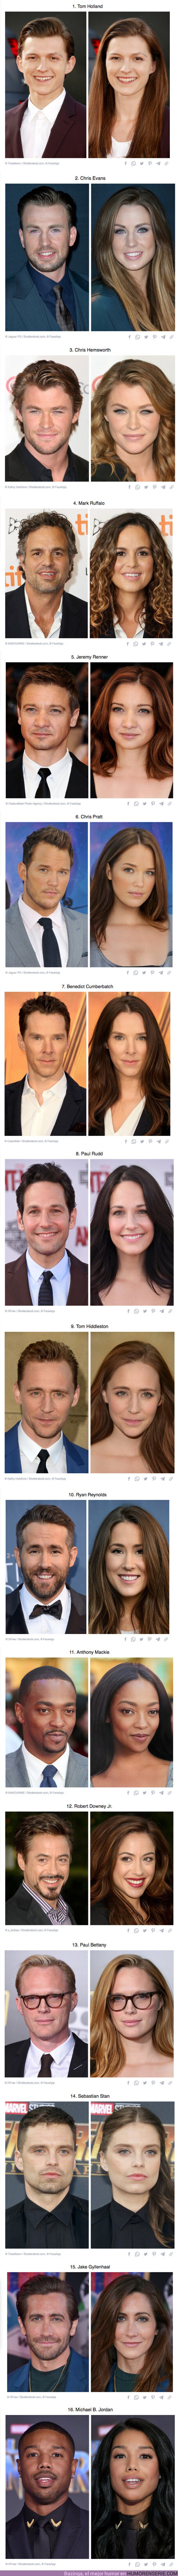 91336 - GALERÍA: Cómo se verían los 16 de los actores masculinos más famosos de Marvel si fueran mujeres